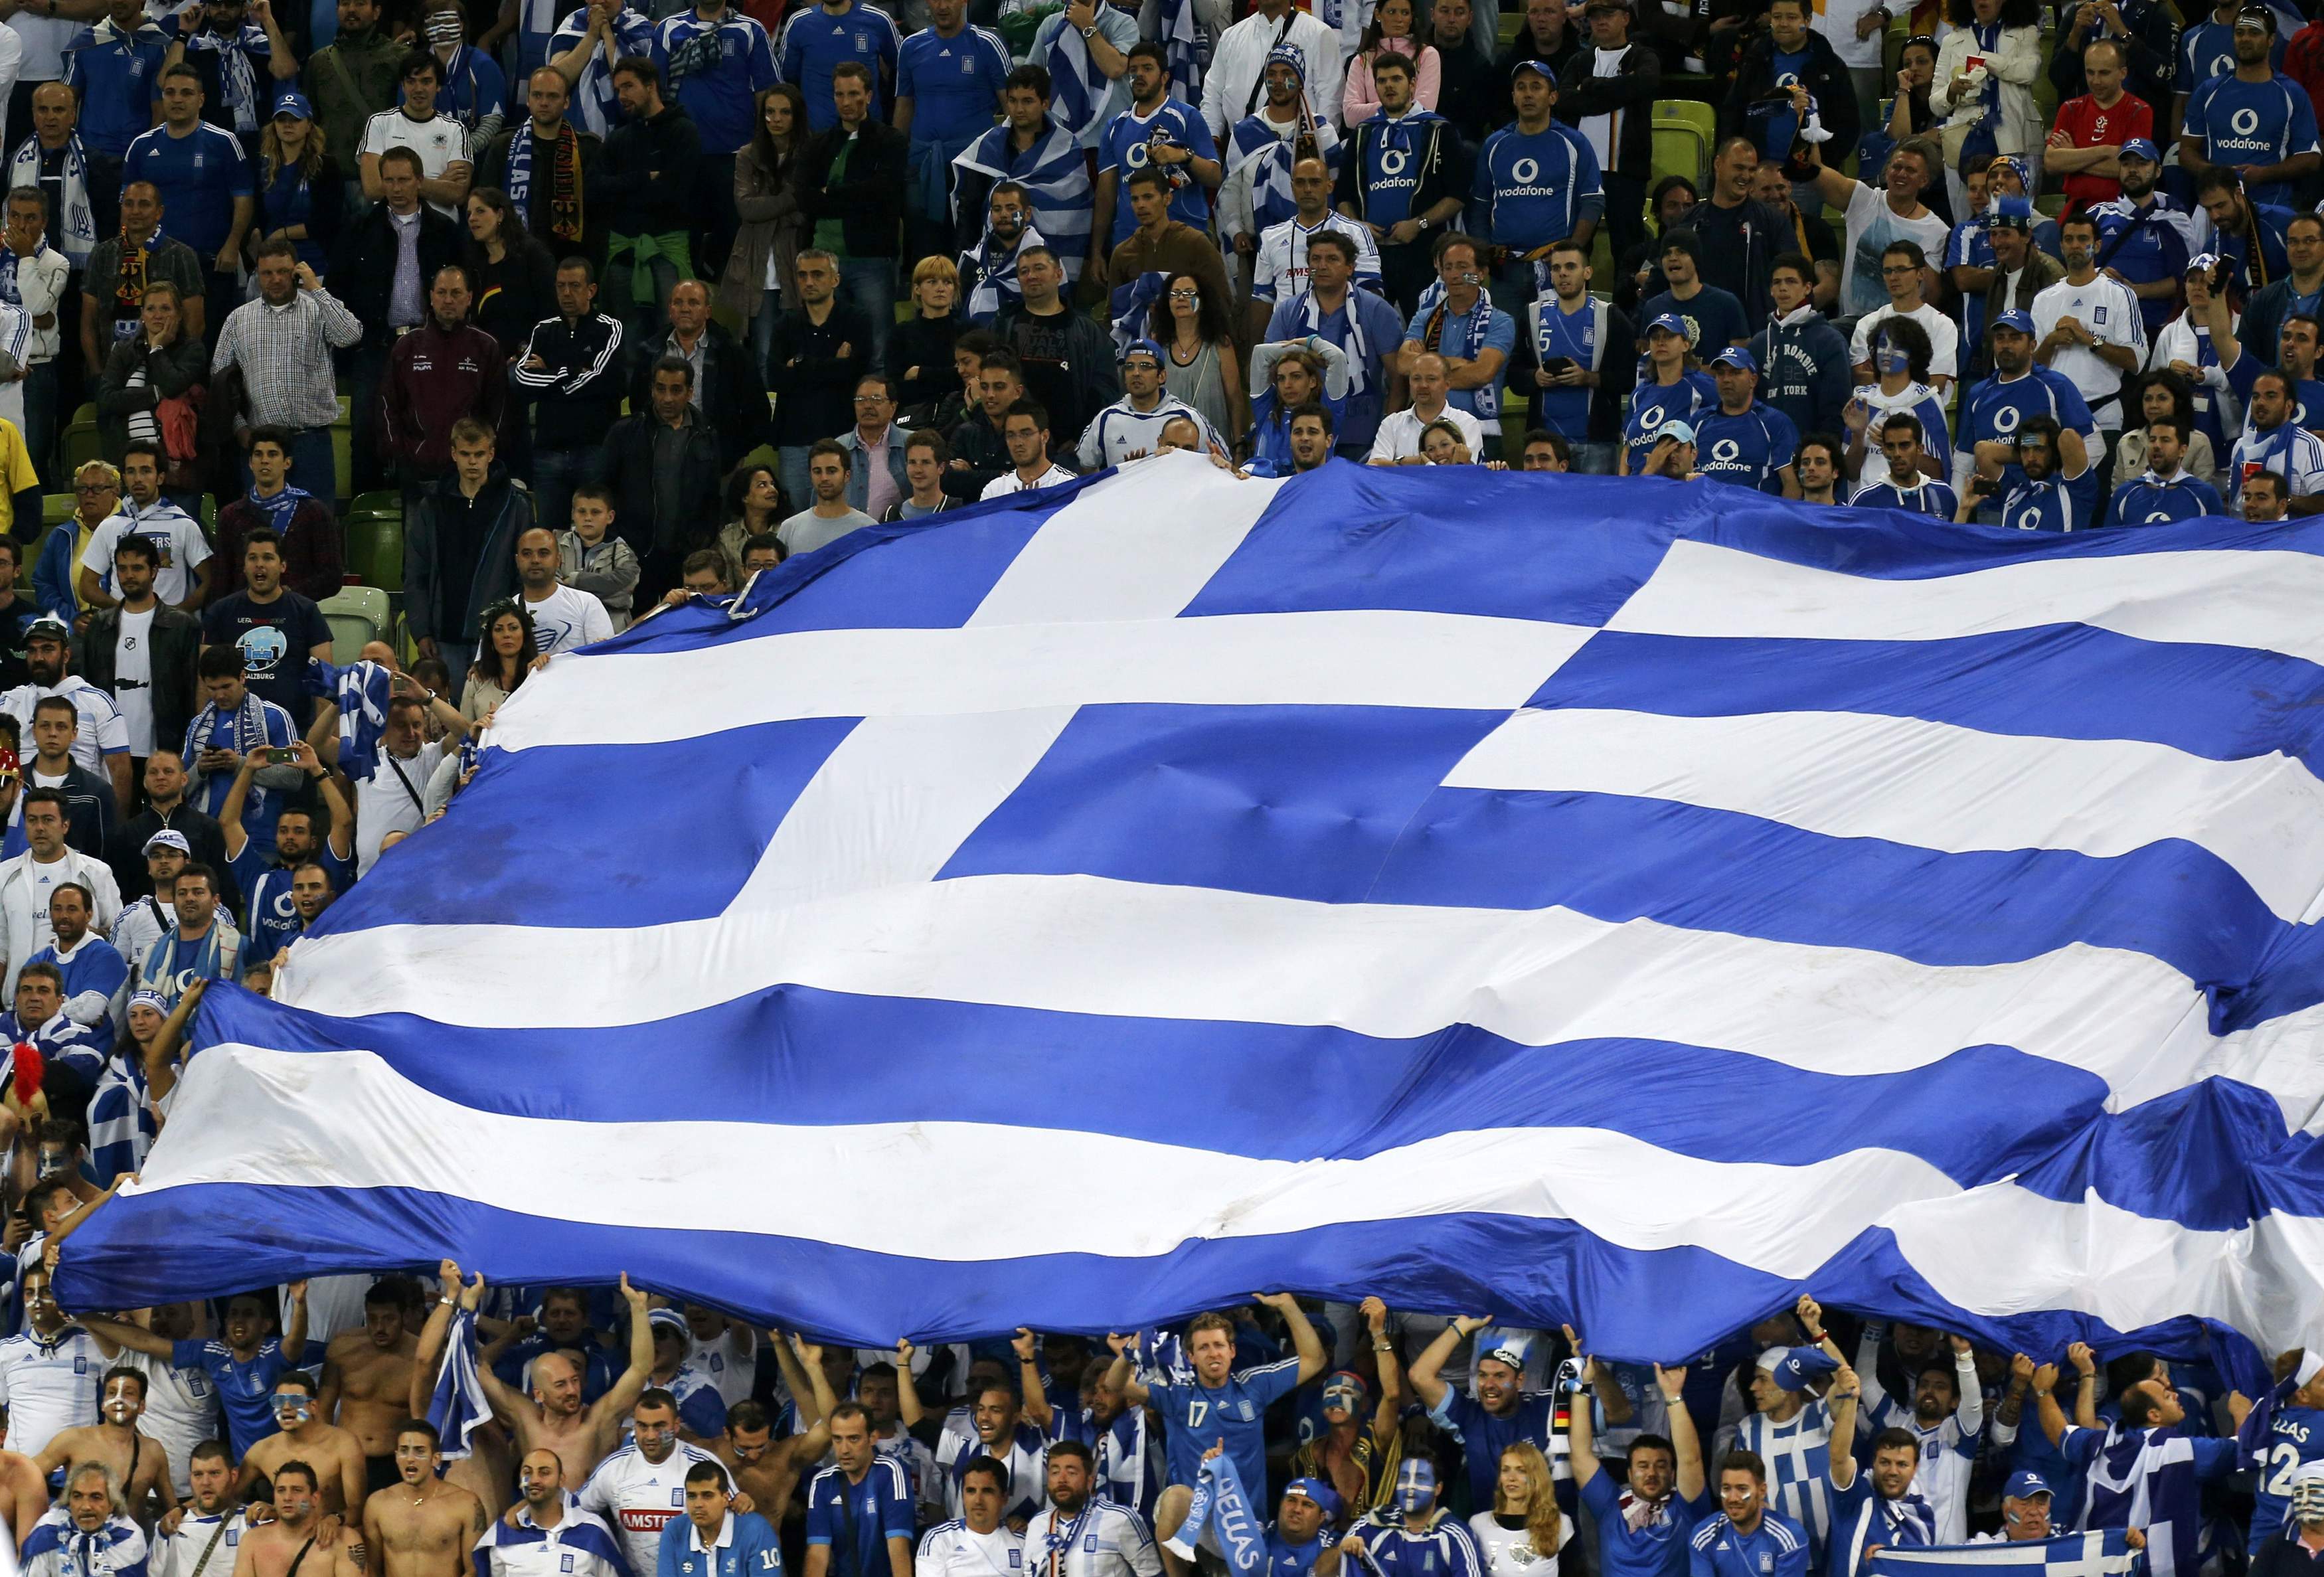 Οι Έλληνες έδωσαν παλμό απέναντι στη Γερμανία – ΦΩΤΟ